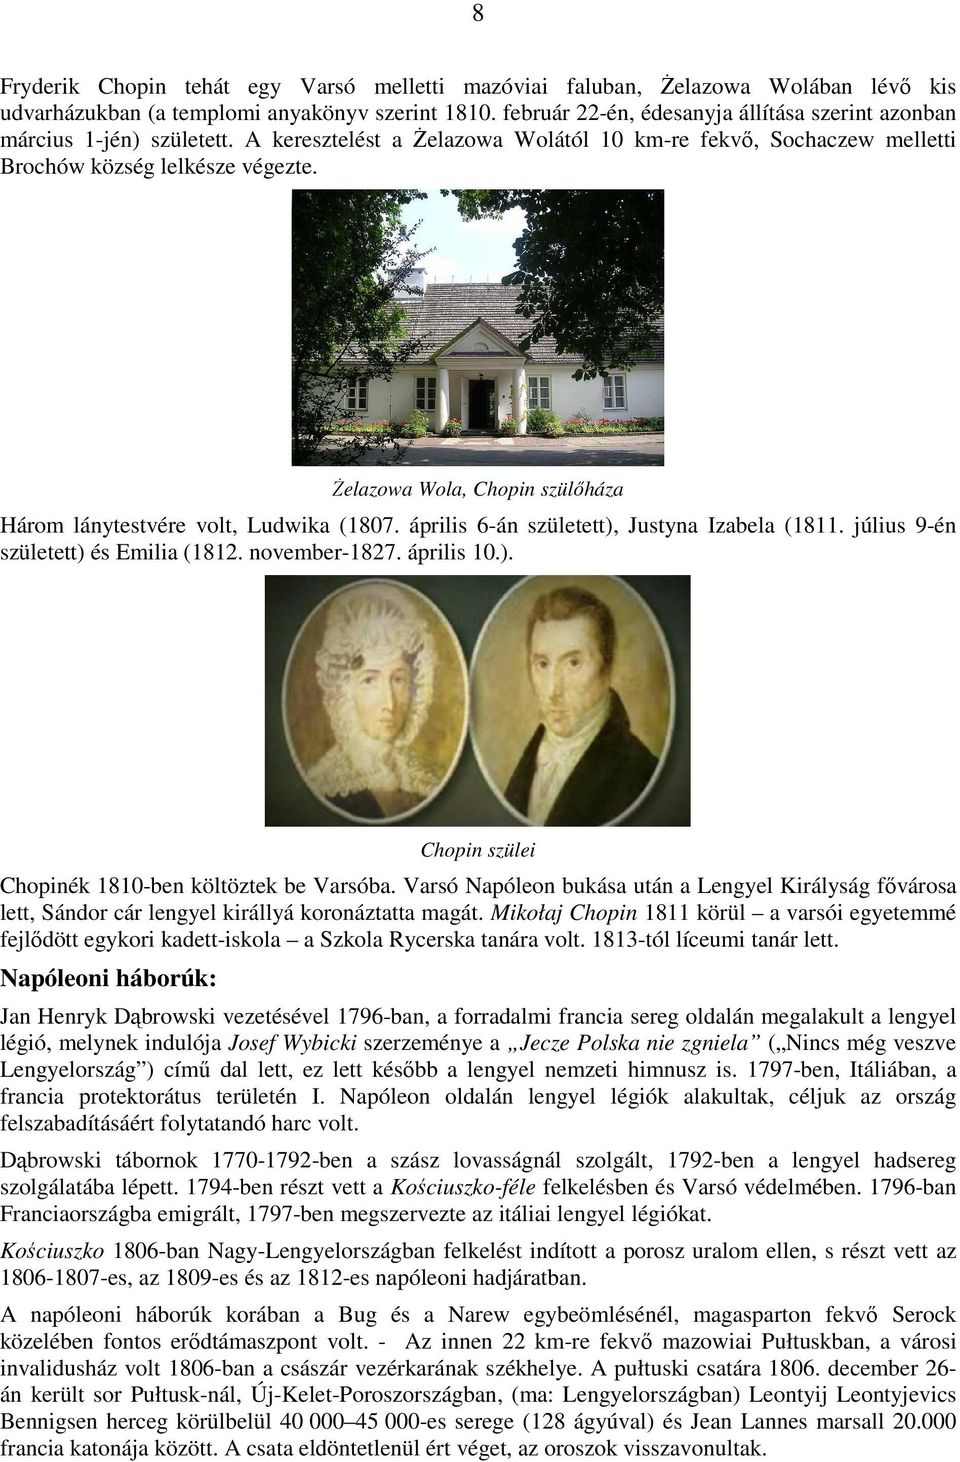 śelazowa Wola, Chopin szülıháza Három lánytestvére volt, Ludwika (1807. április 6-án született), Justyna Izabela (1811. július 9-én született) és Emilia (1812. november-1827. április 10.). Chopin szülei Chopinék 1810-ben költöztek be Varsóba.